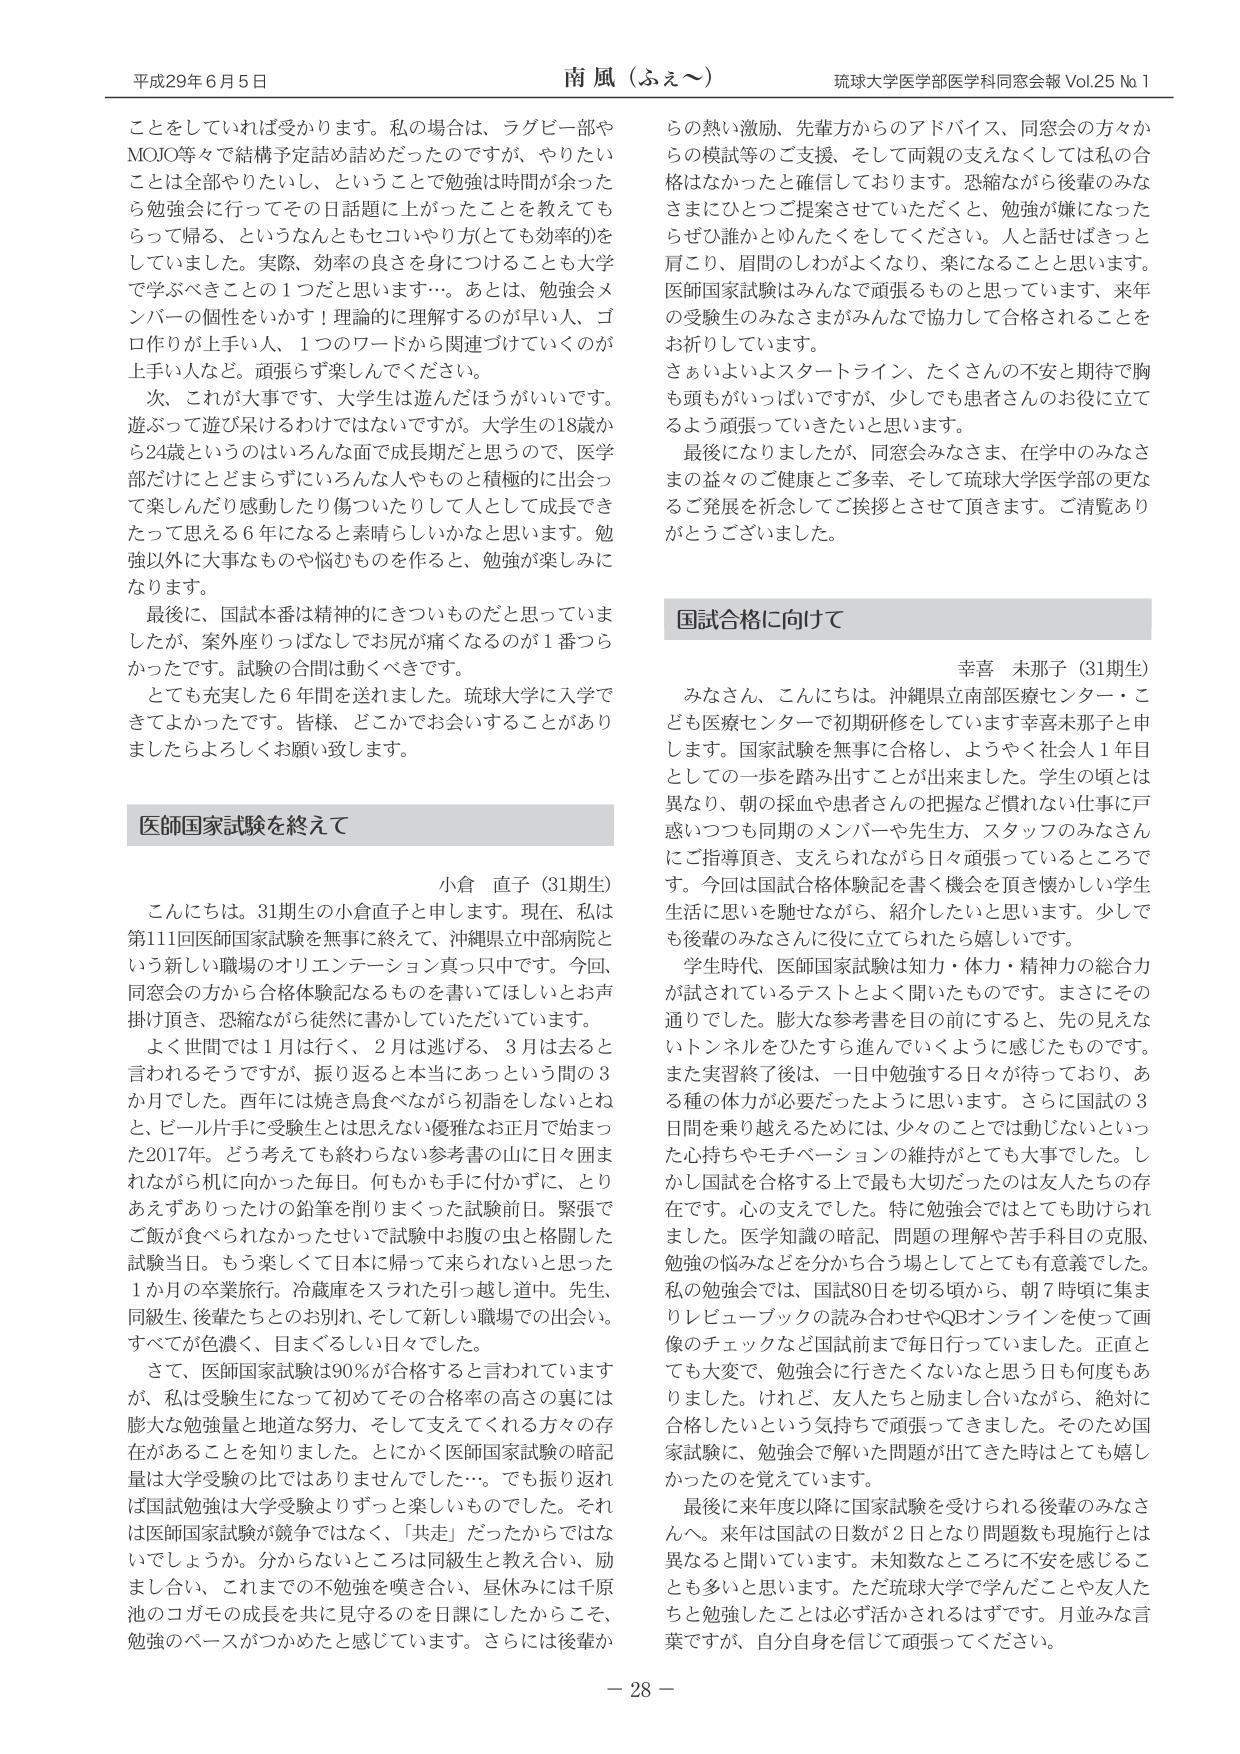 平成29年2月第111回医師国家試験<br>琉球大学の結果報告と変遷(4)